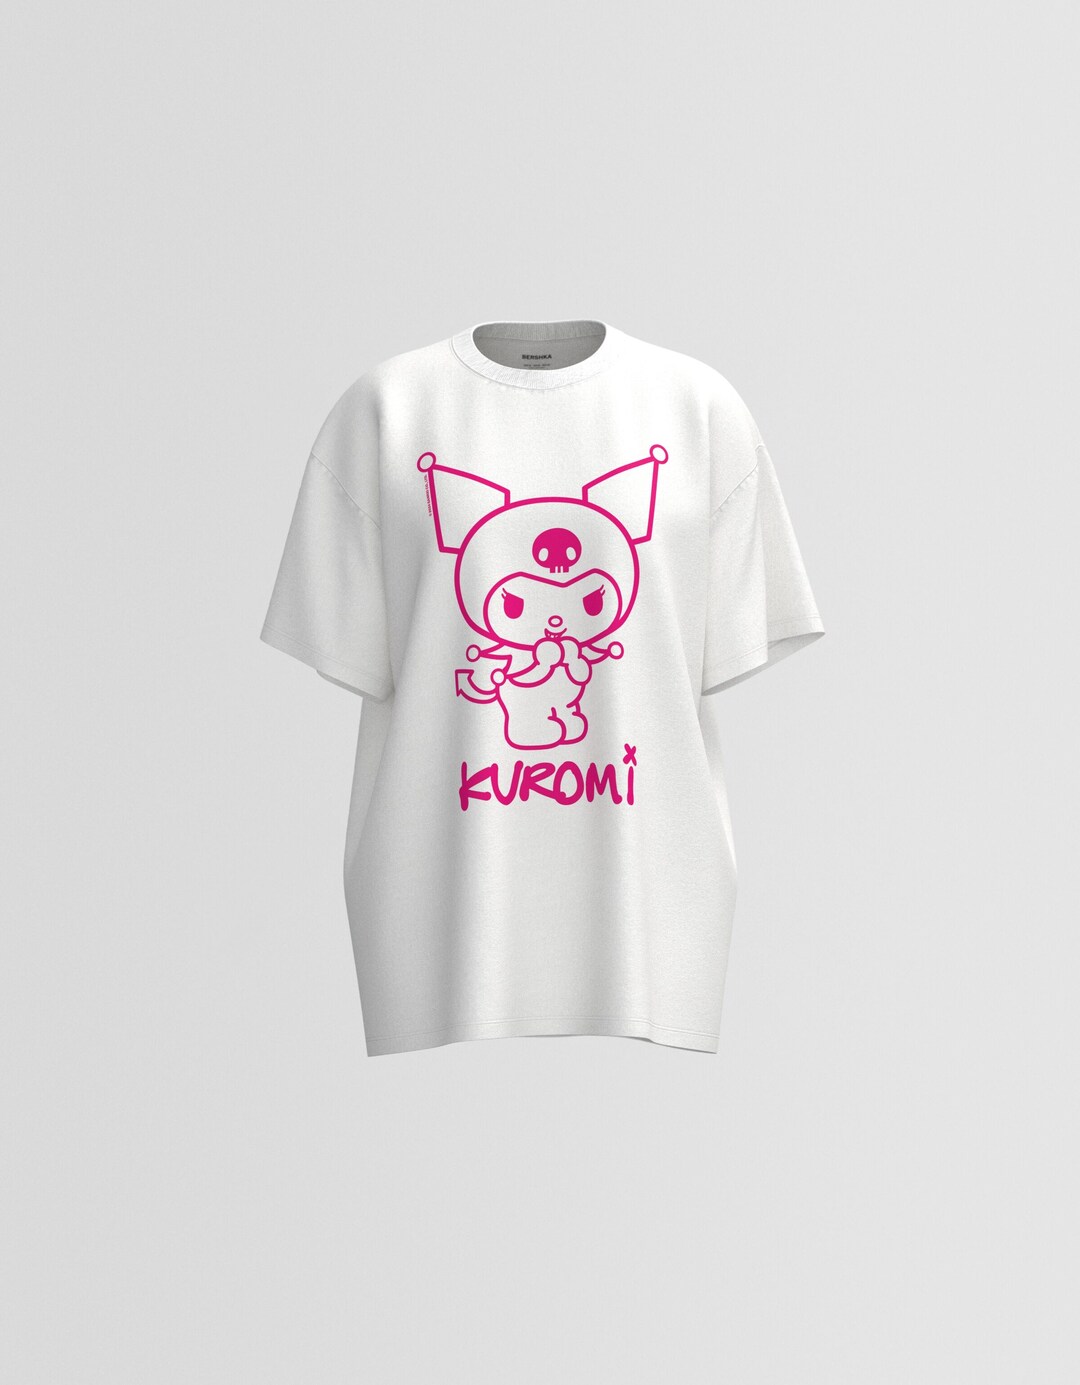 Camiseta Kuromi manga corta boxy